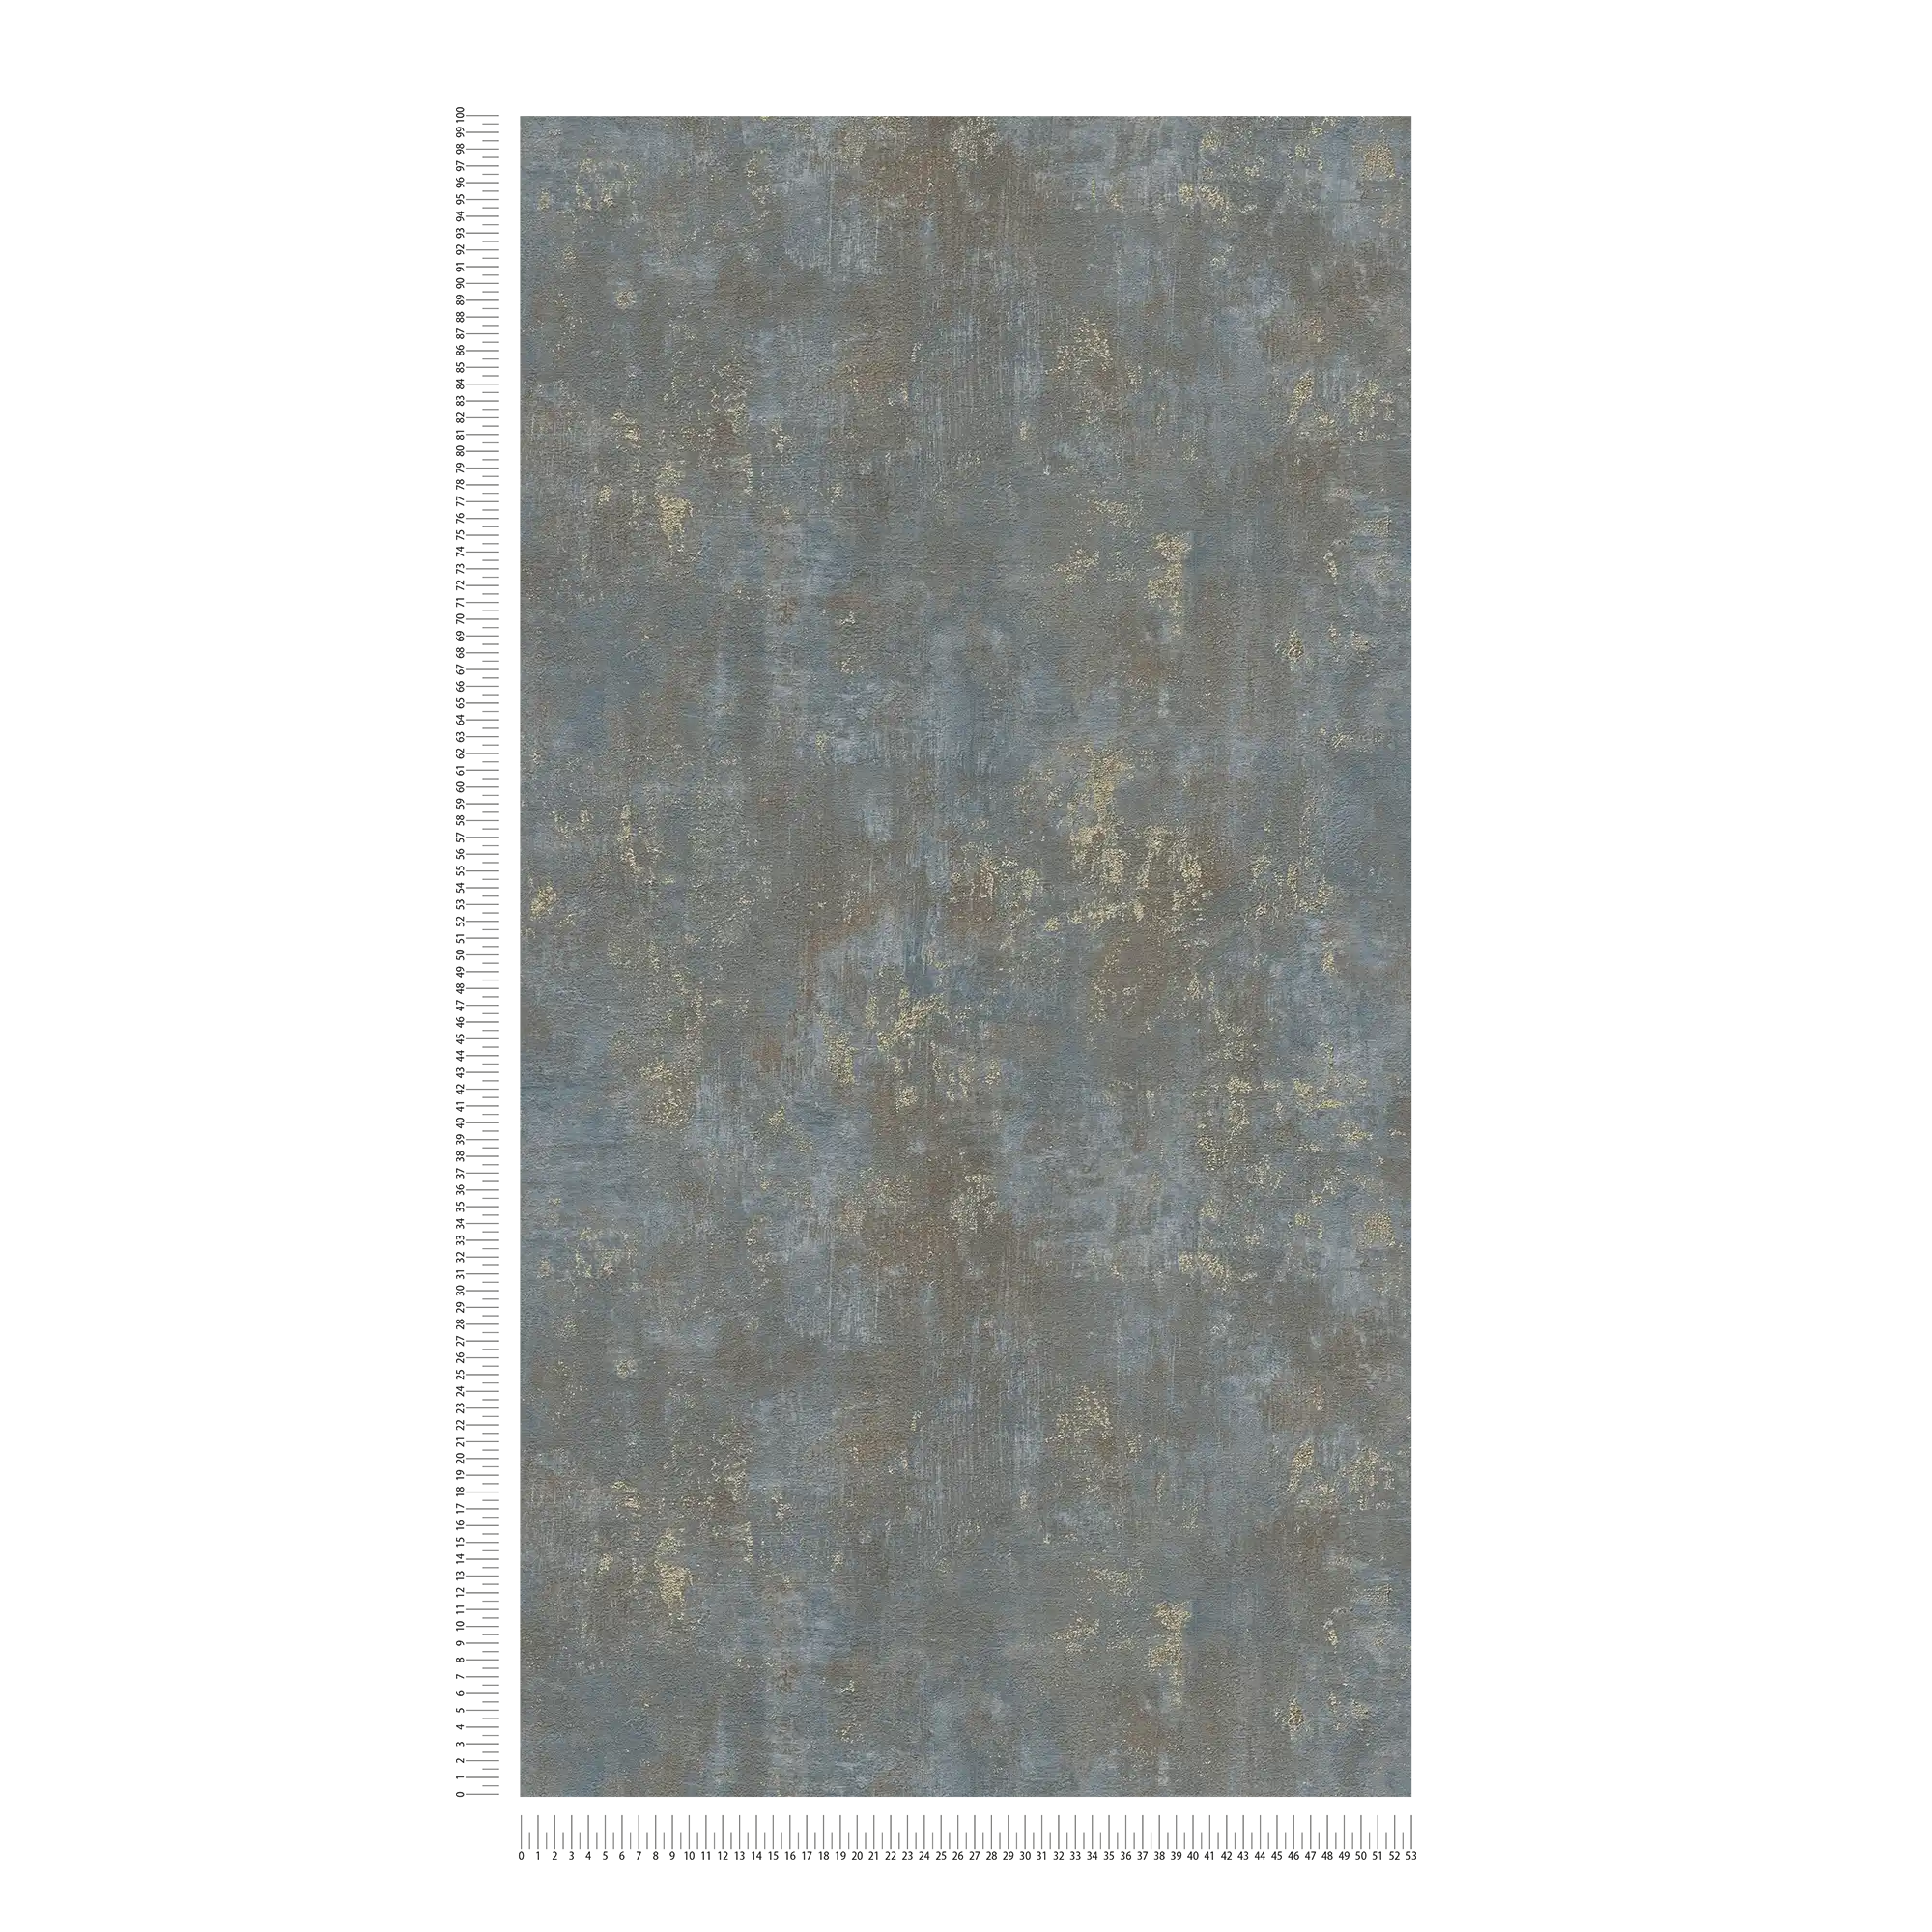             Tapete in Rostoptik mit metallischen Akzenten – Braun, Blau, Gold
        